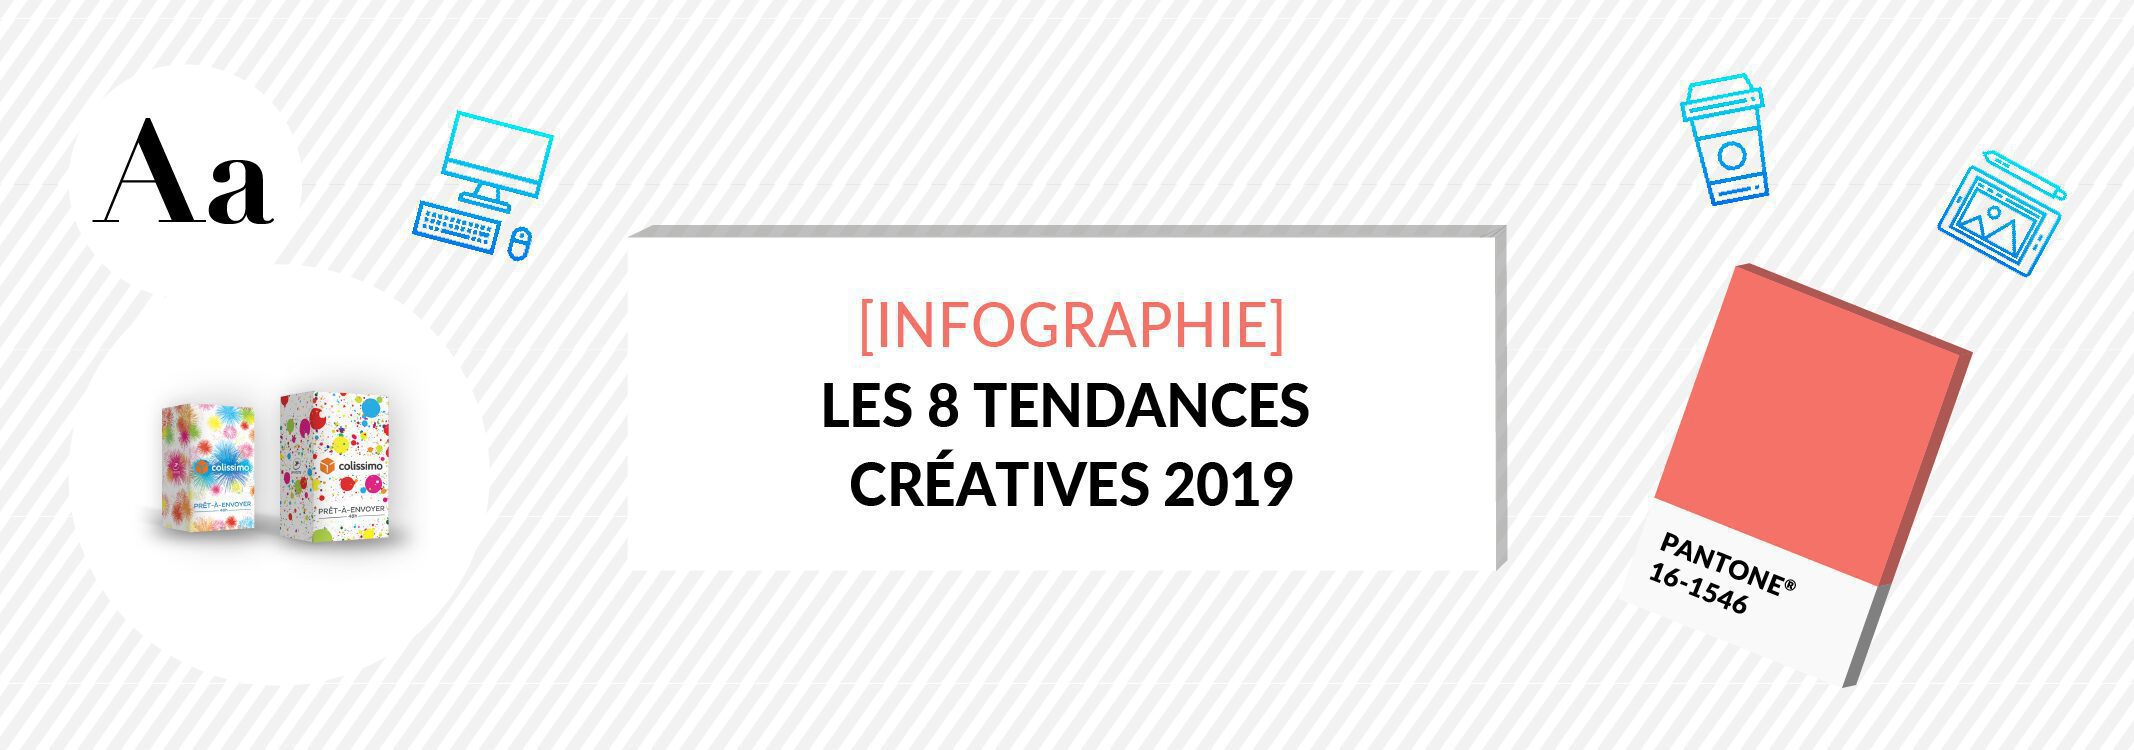 header tendances creatives 2019